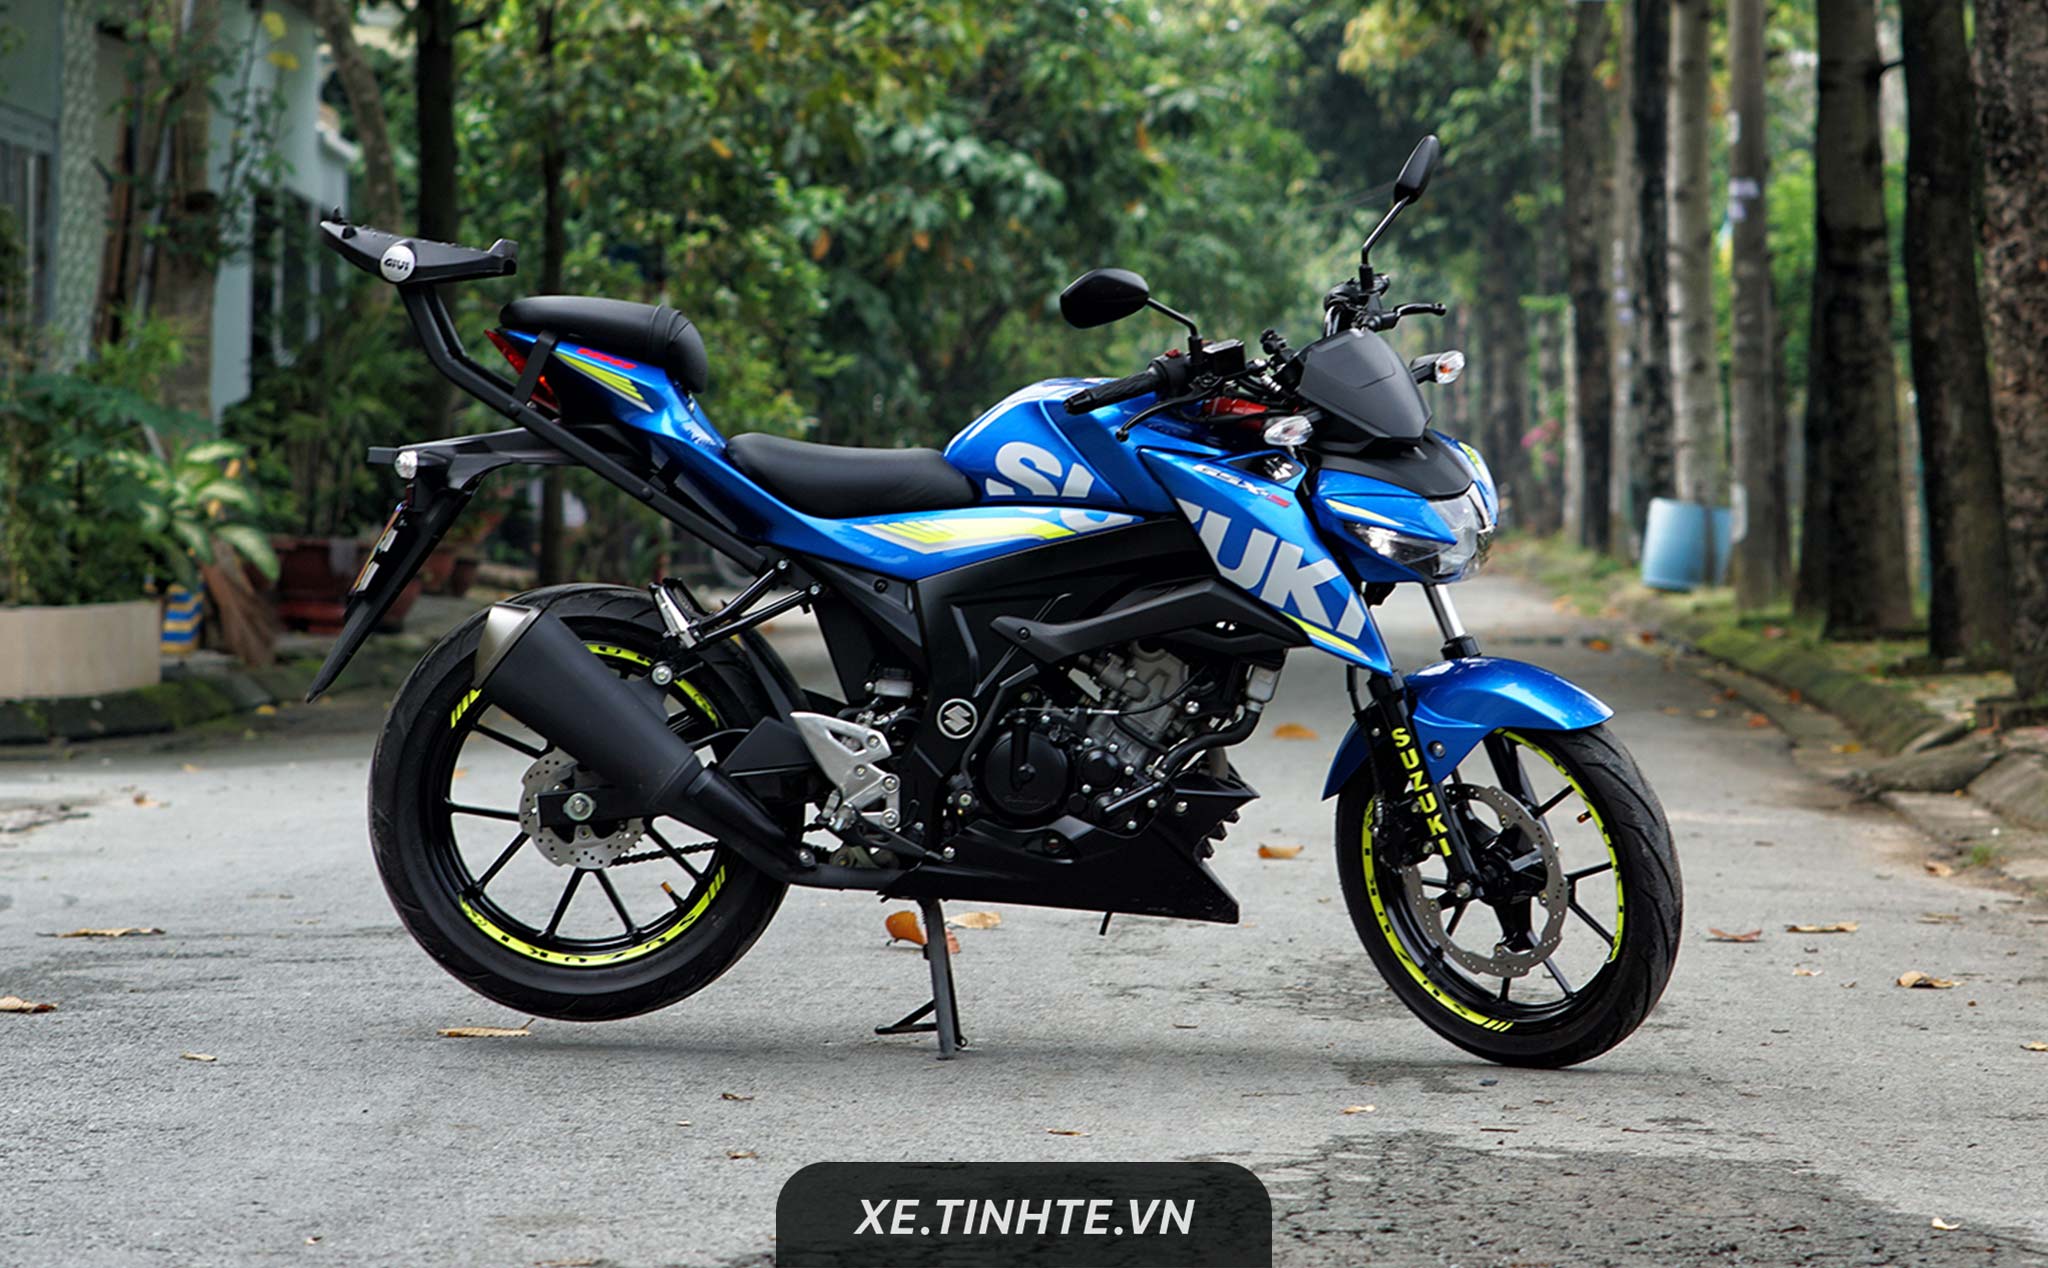 [Review Xe] Suzuki GSX-S150: Chất, Chất thiệt, bước đà hoàn hảo